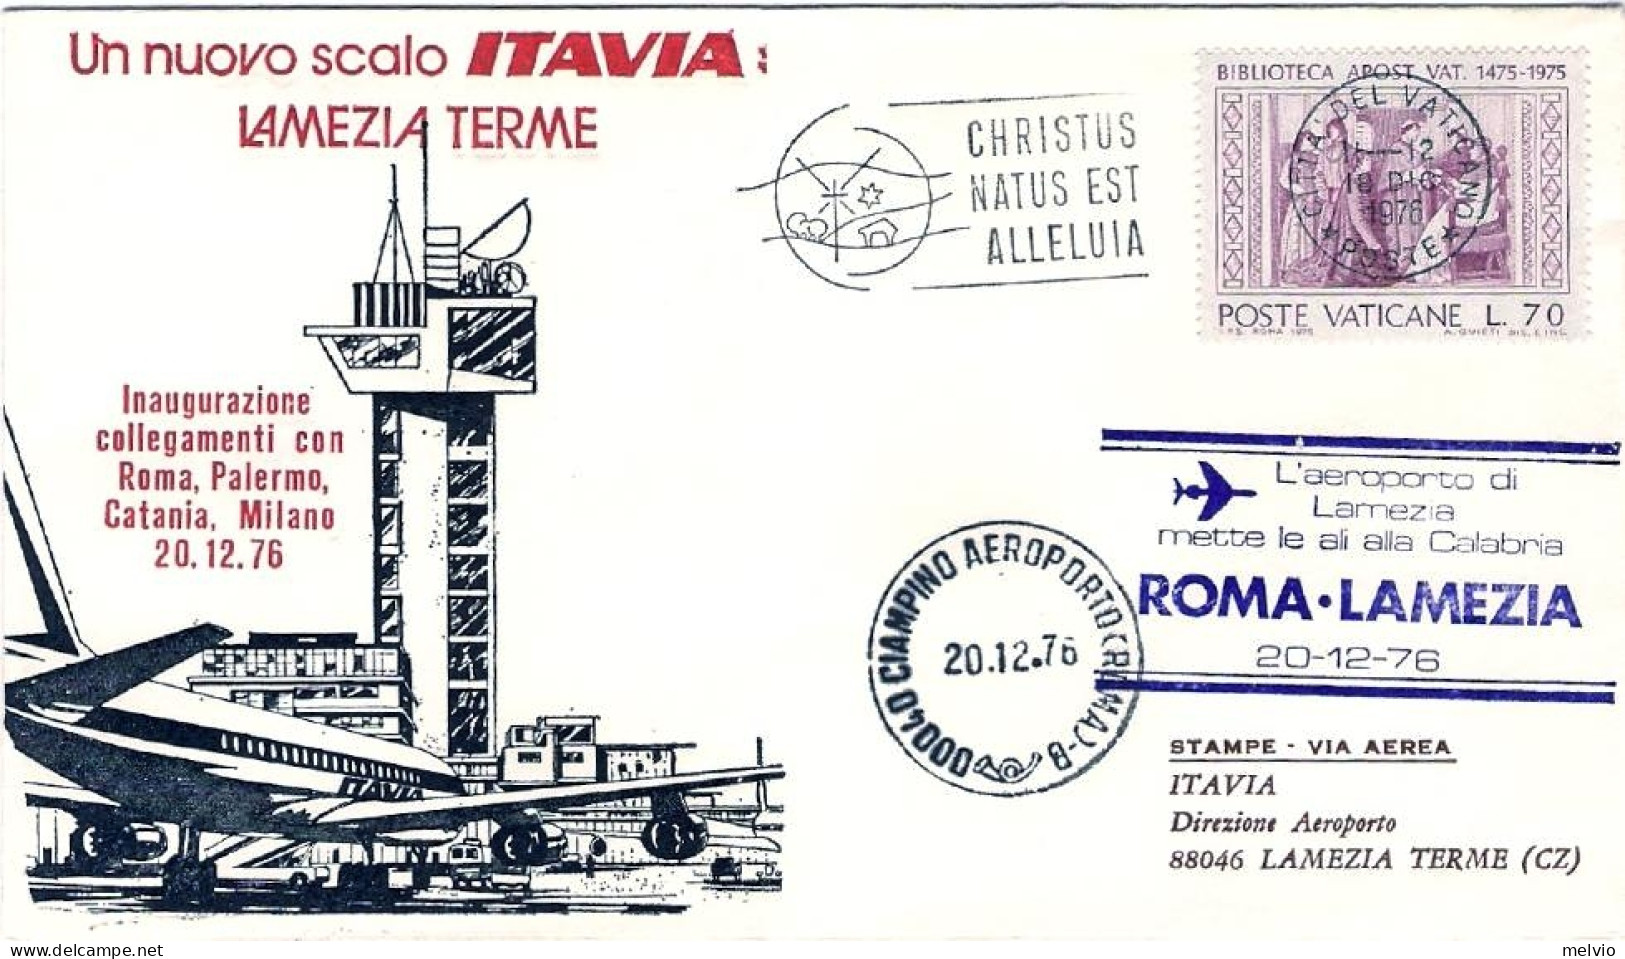 Vaticano-1976 Con Bollo L'aeroporto Di Lamezia Terme Mette Le Ali Alla Calabria  - Luftpost